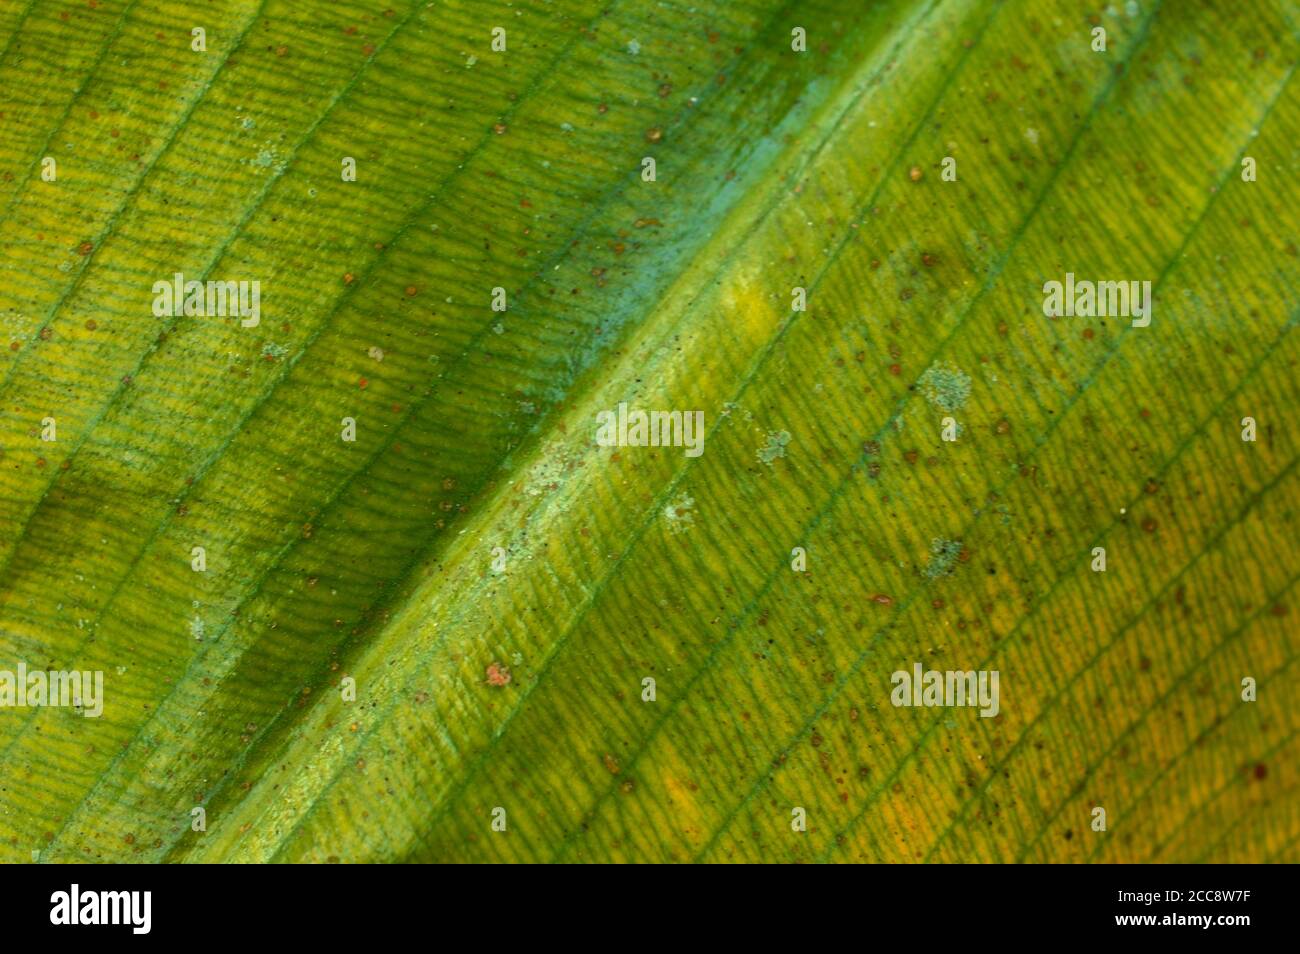 Ein Blatt ist das wichtigste seitliche Anhängsel des vaskulären Pflanzenstamms, der normalerweise über dem Boden getragen wird und für die Photosynthese spezialisiert ist. Stockfoto